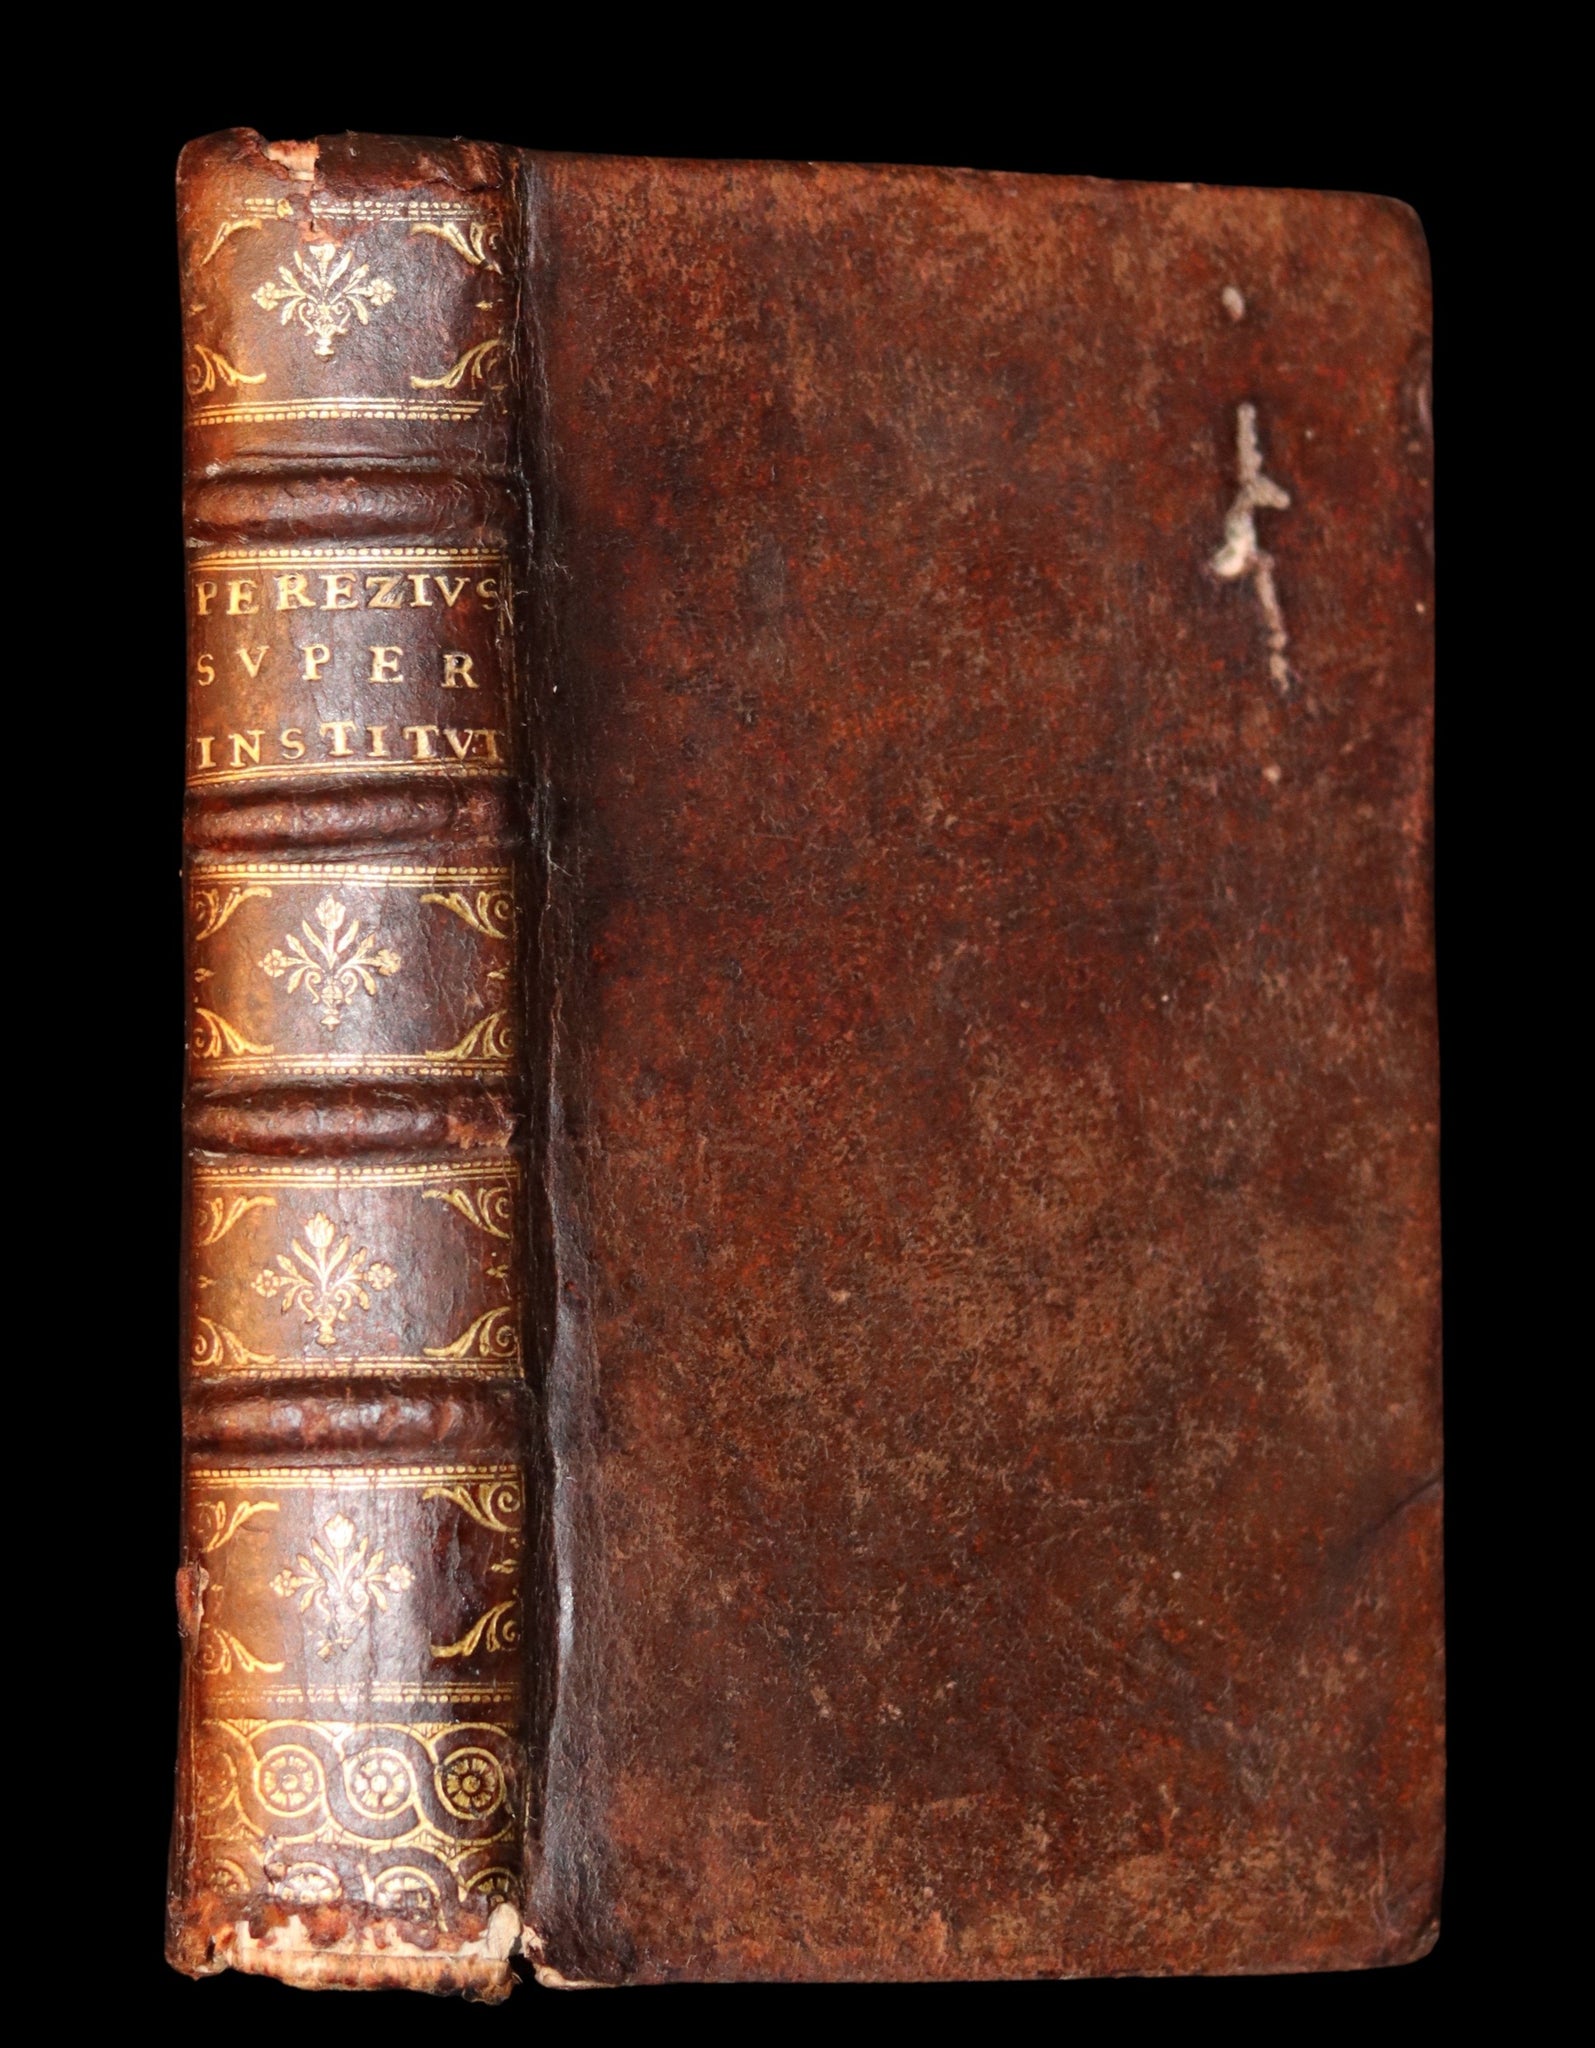 1692 Rare Law Book - INSTITUTIONES IMPERIALES EROTEMATIBUS DISTINCTÆ by Antonio Perez.